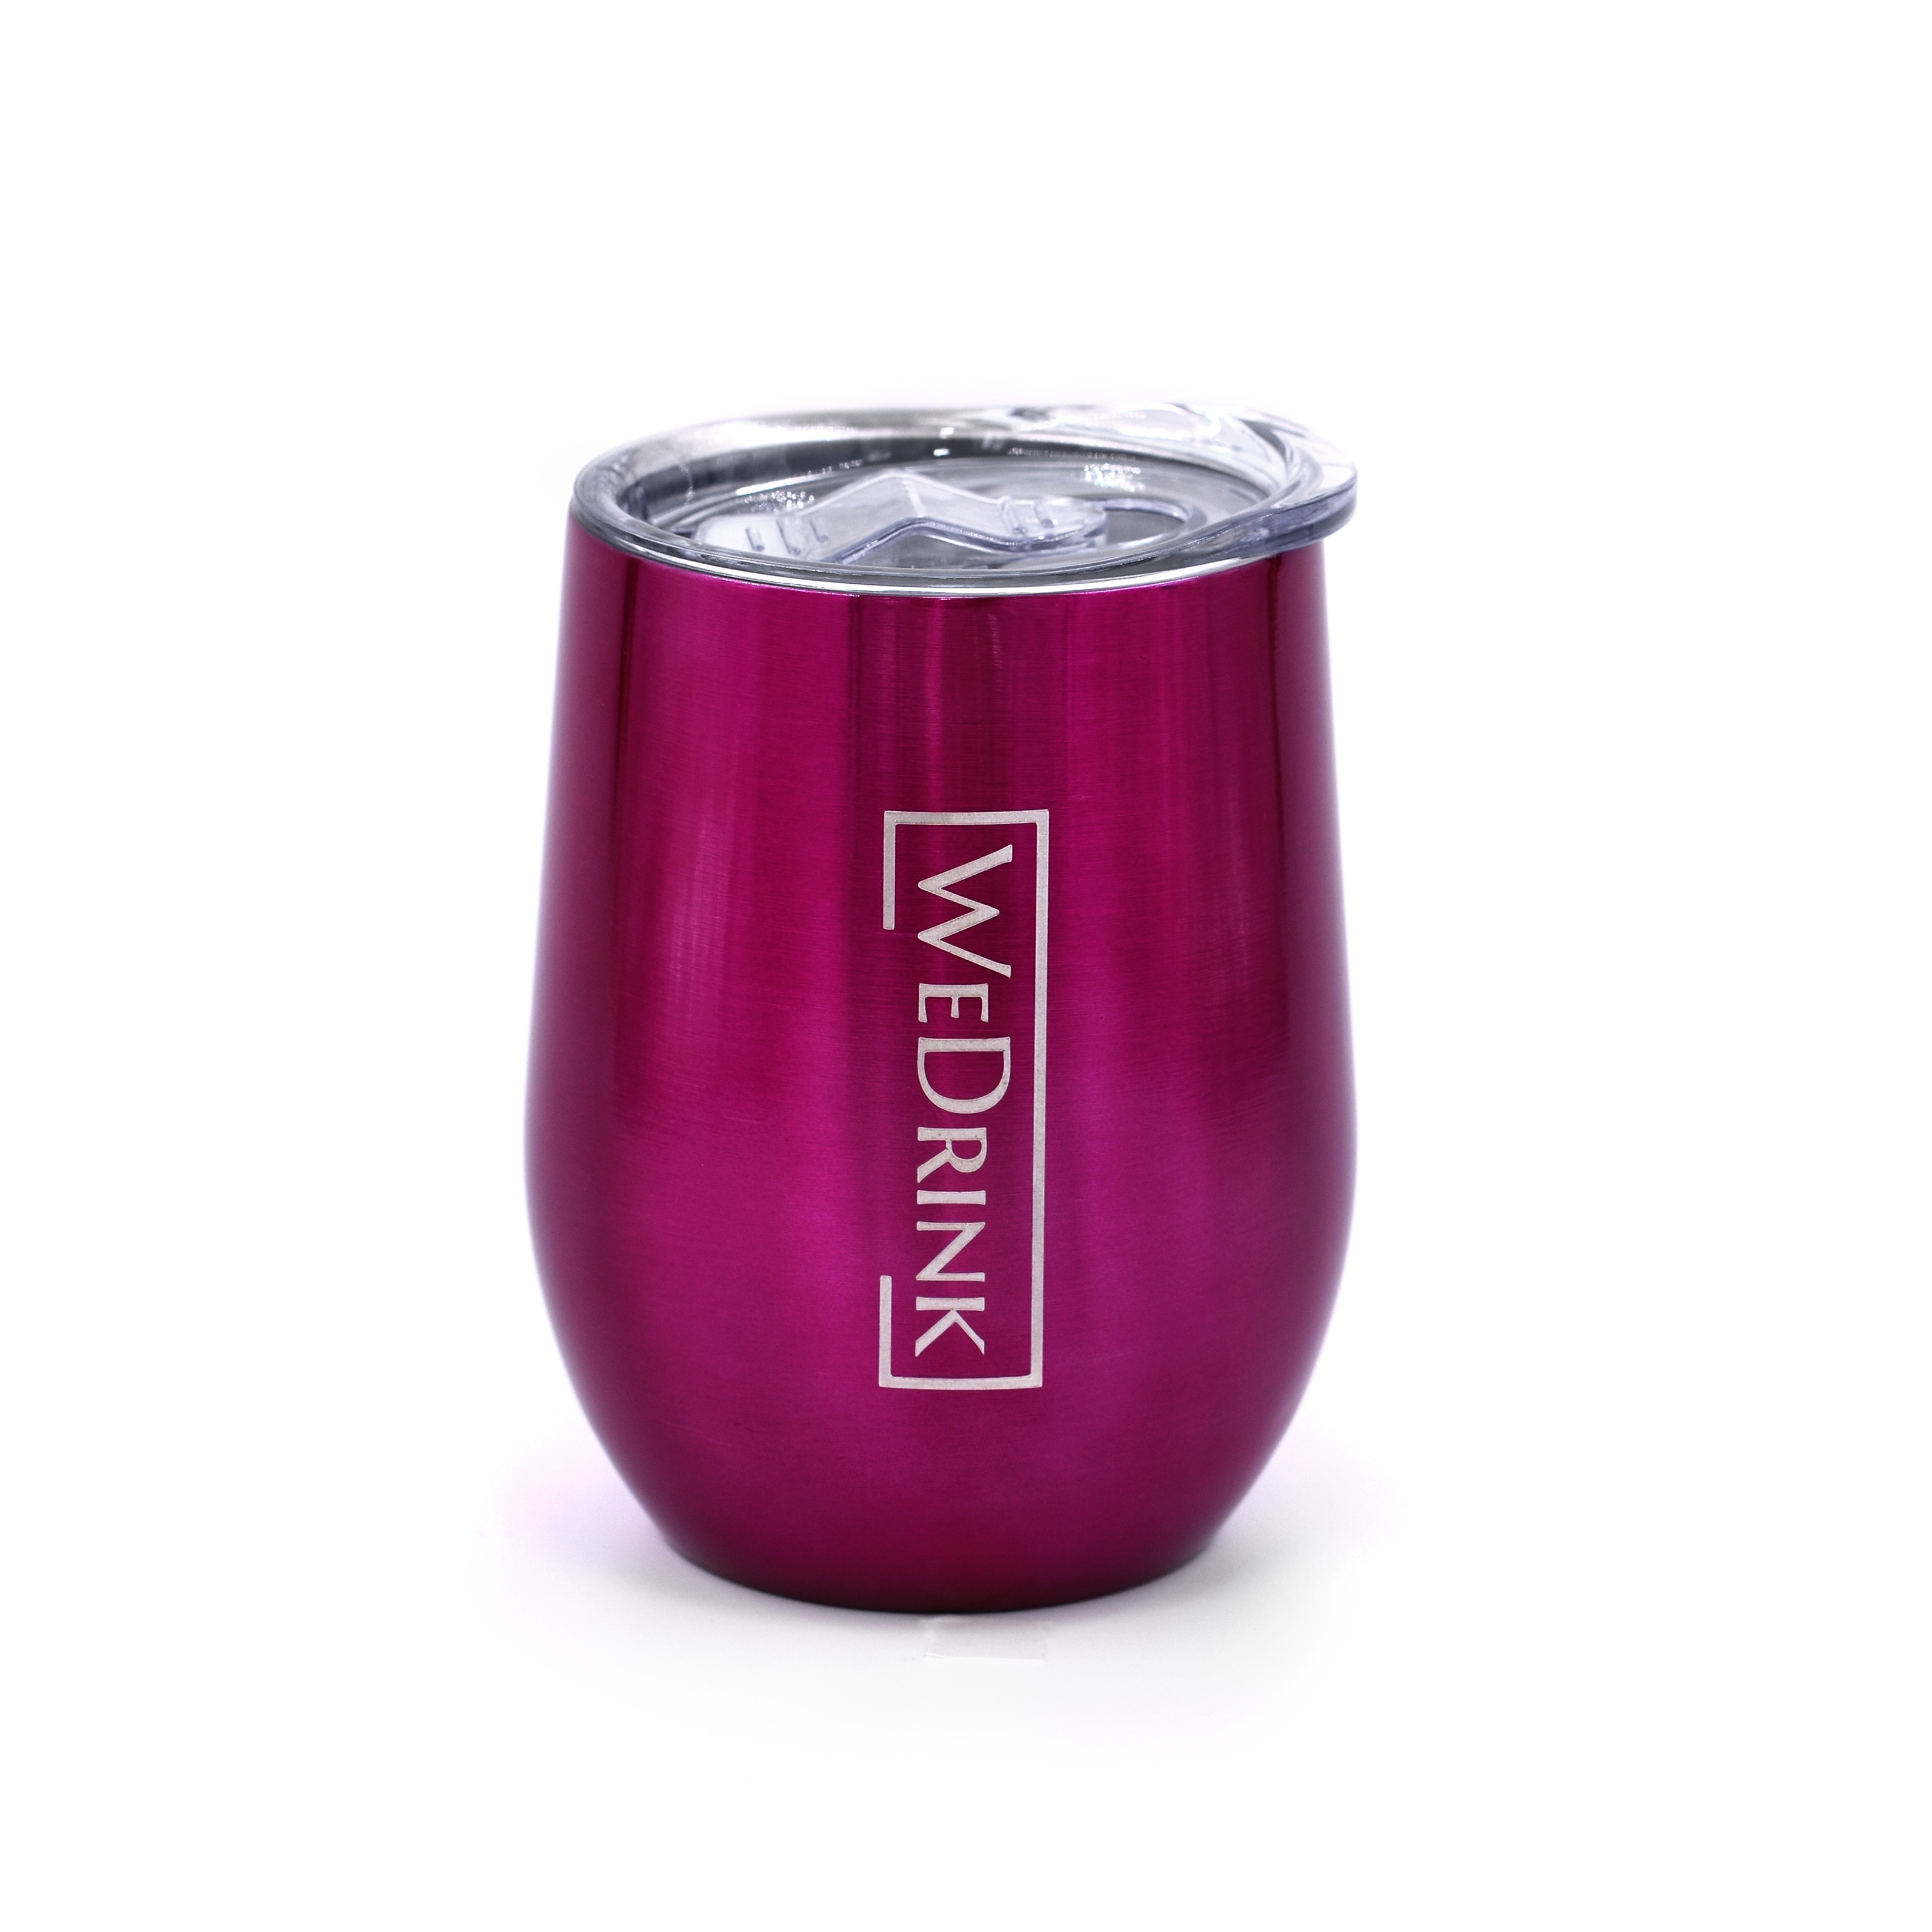 WEDRINK Mug 350 ml Charming Pink (WD-WM-07L)